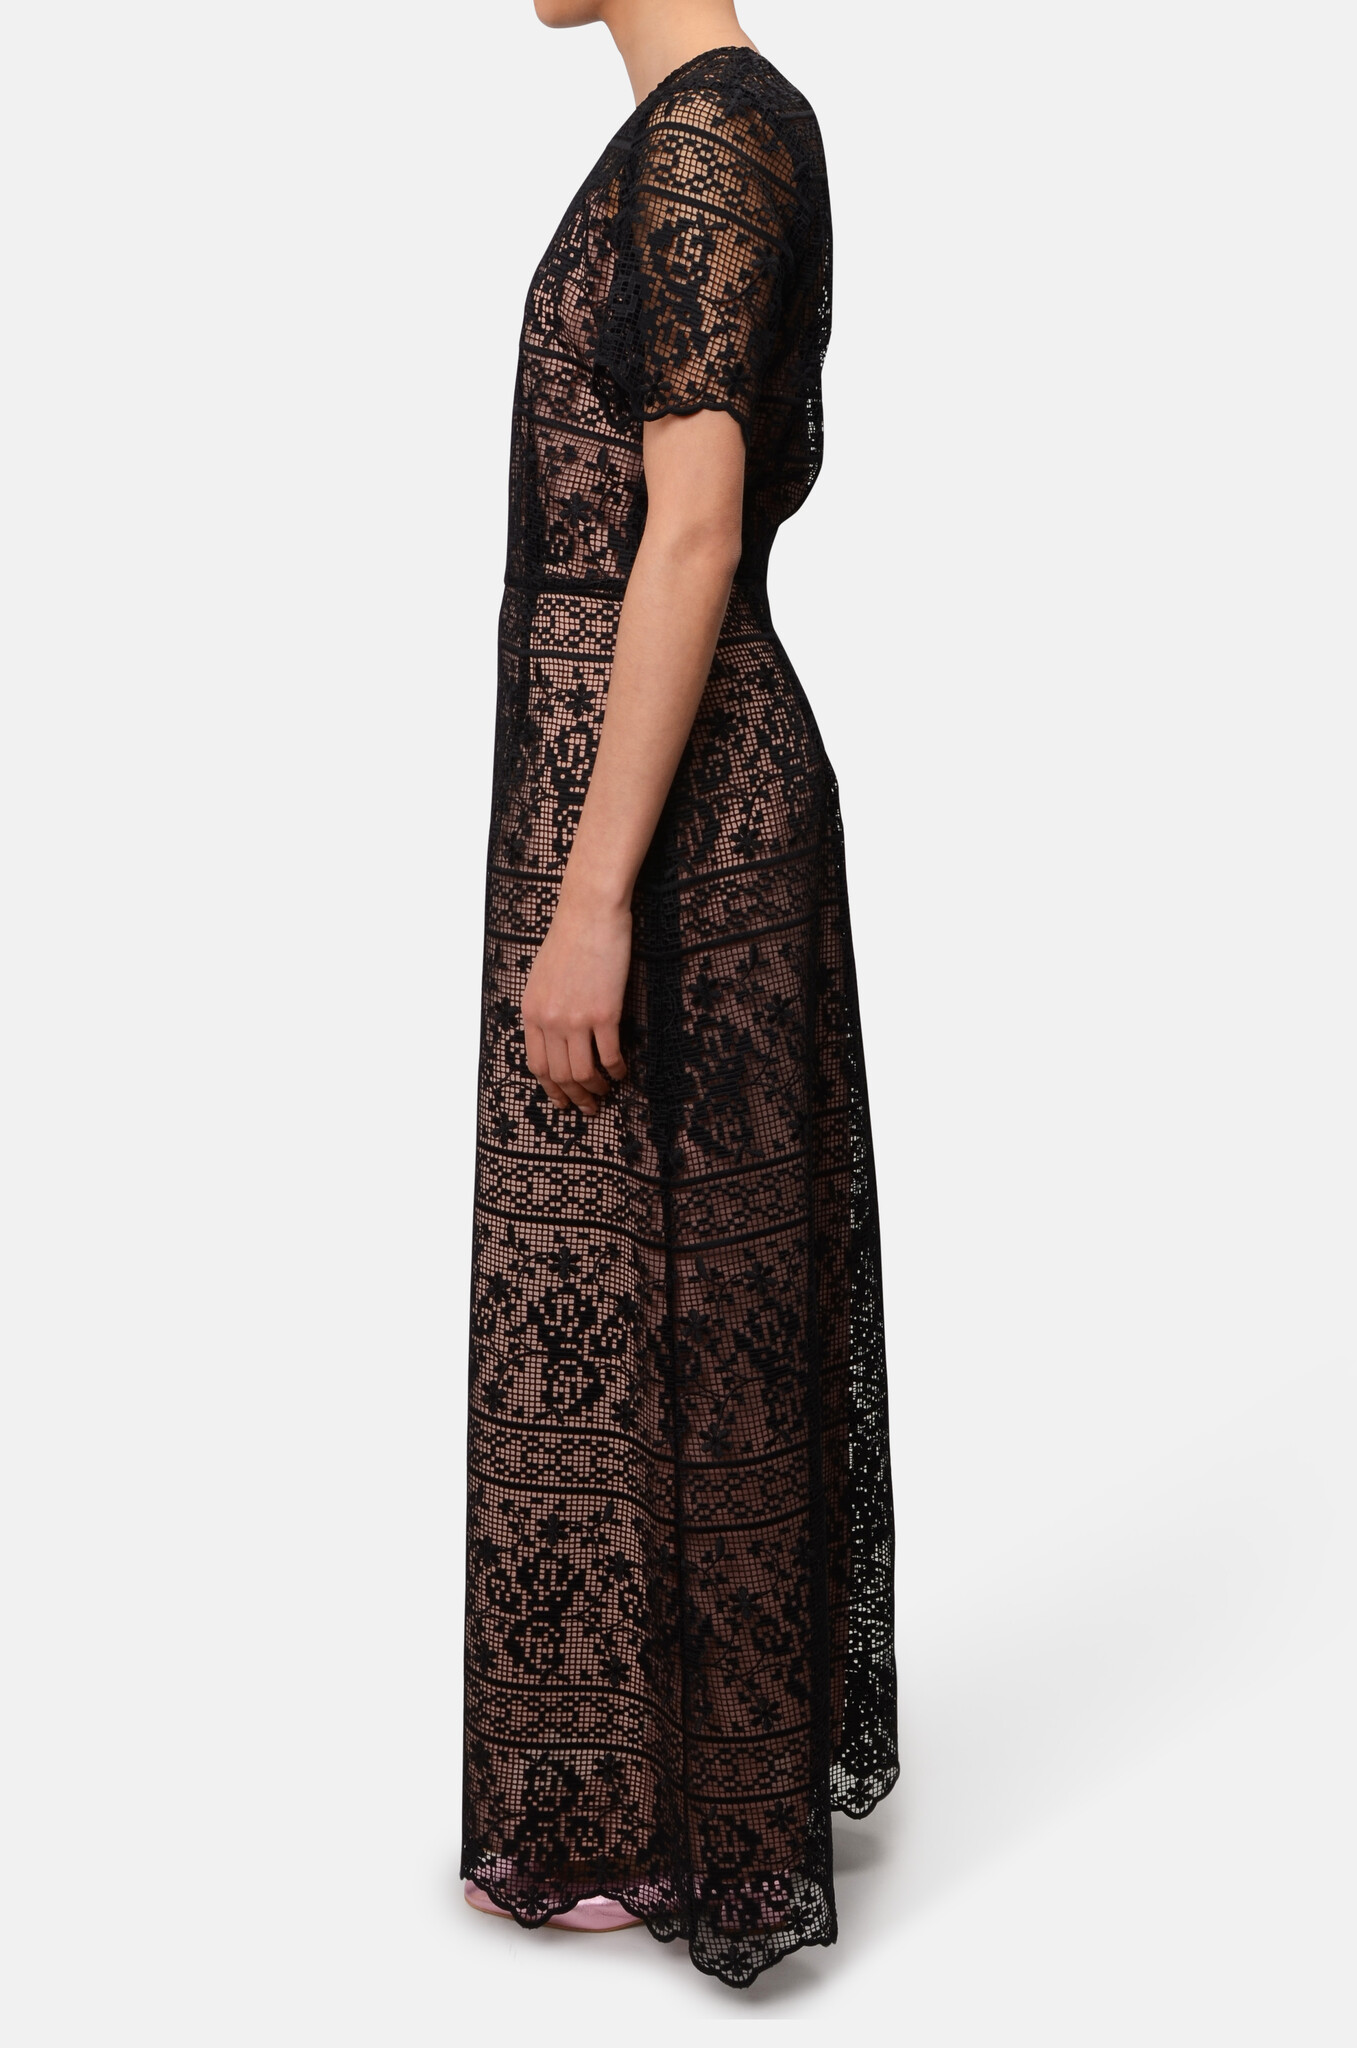 Crochet Lace Maxi Dress in Black-3